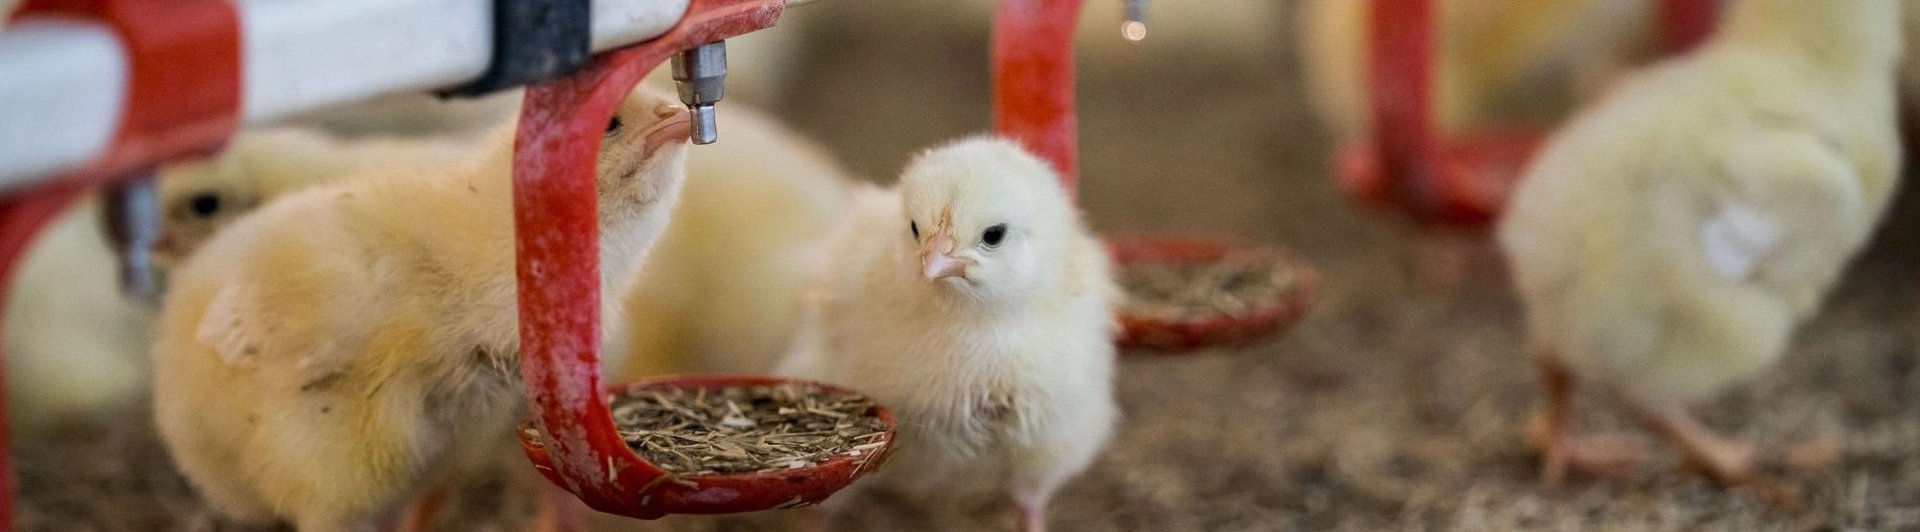 Kycklingar i köttindustrin